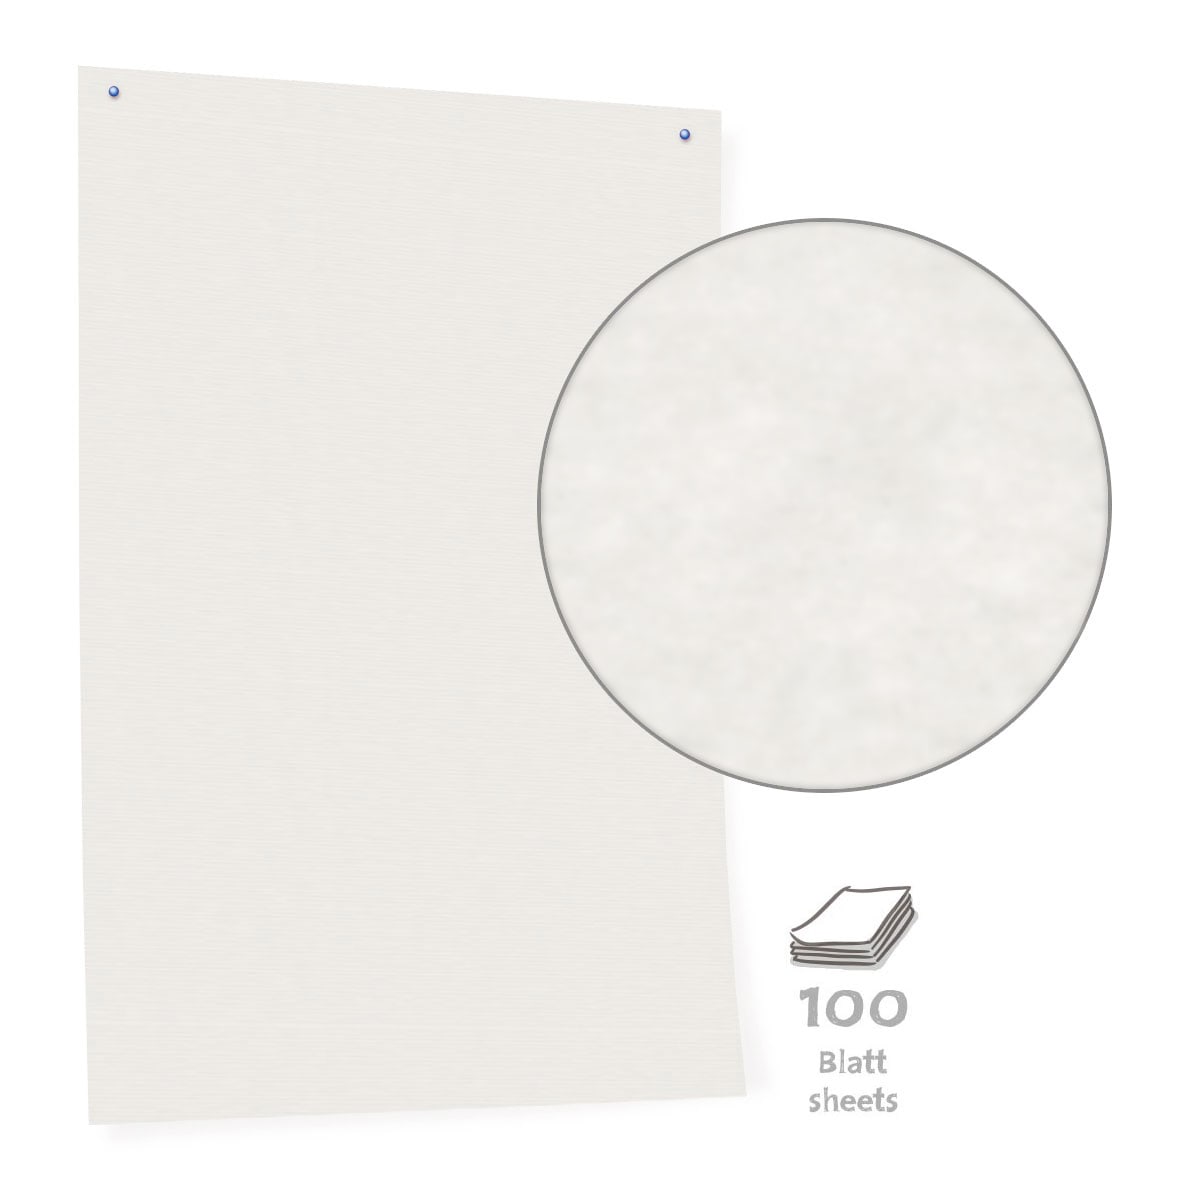 White Pinboard Paper- 100 blatt